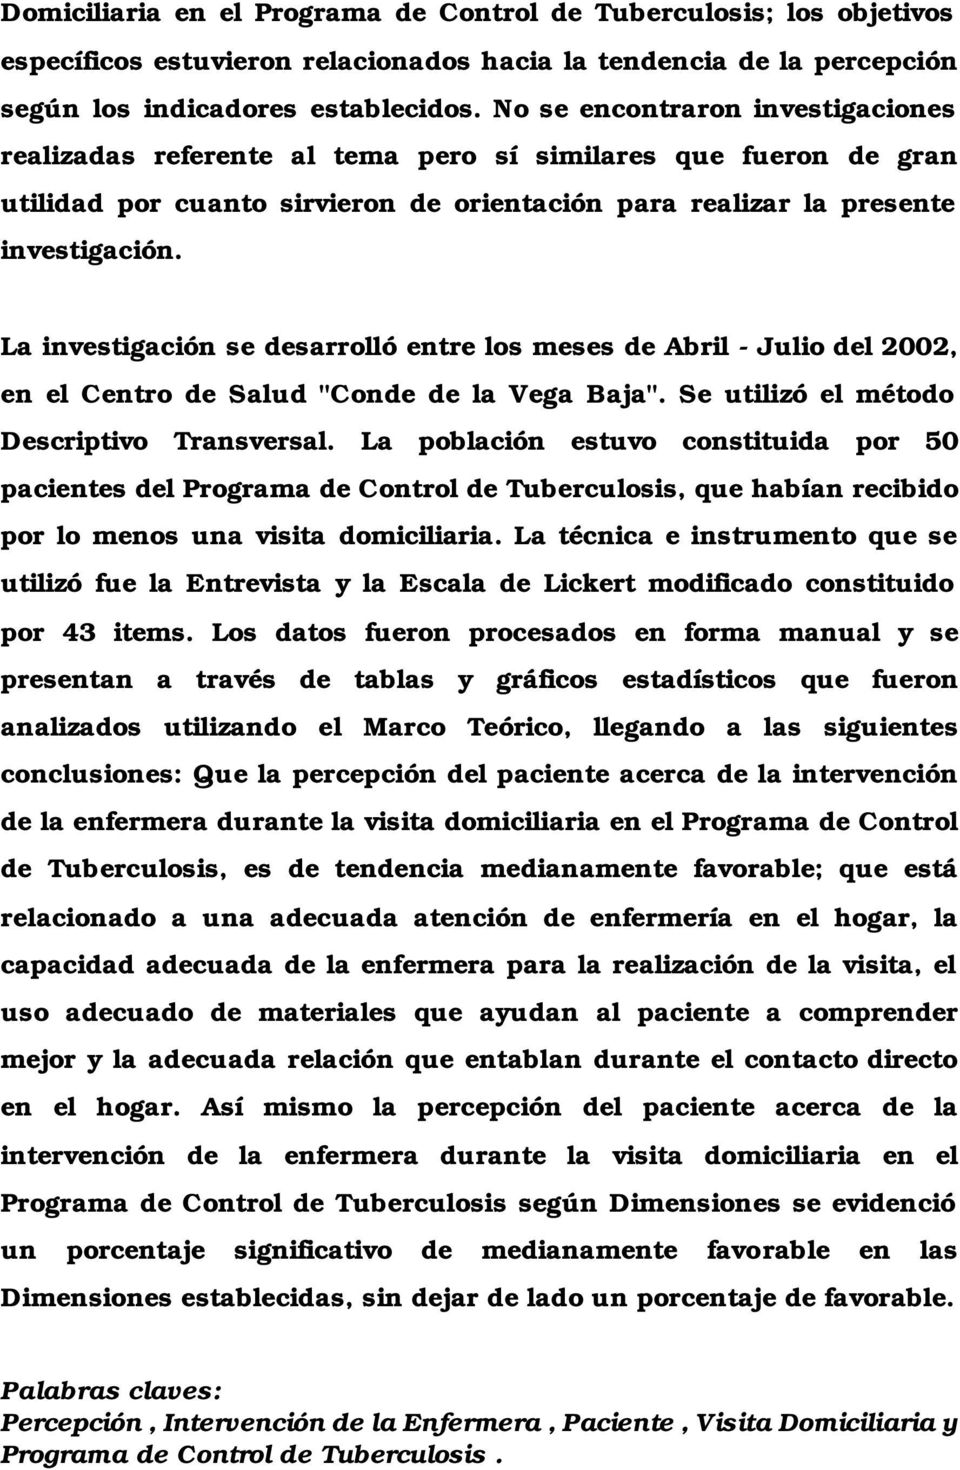 La investigación se desarrolló entre los meses de Abril - Julio del 2002, en el Centro de Salud "Conde de la Vega Baja". Se utilizó el método Descriptivo Transversal.